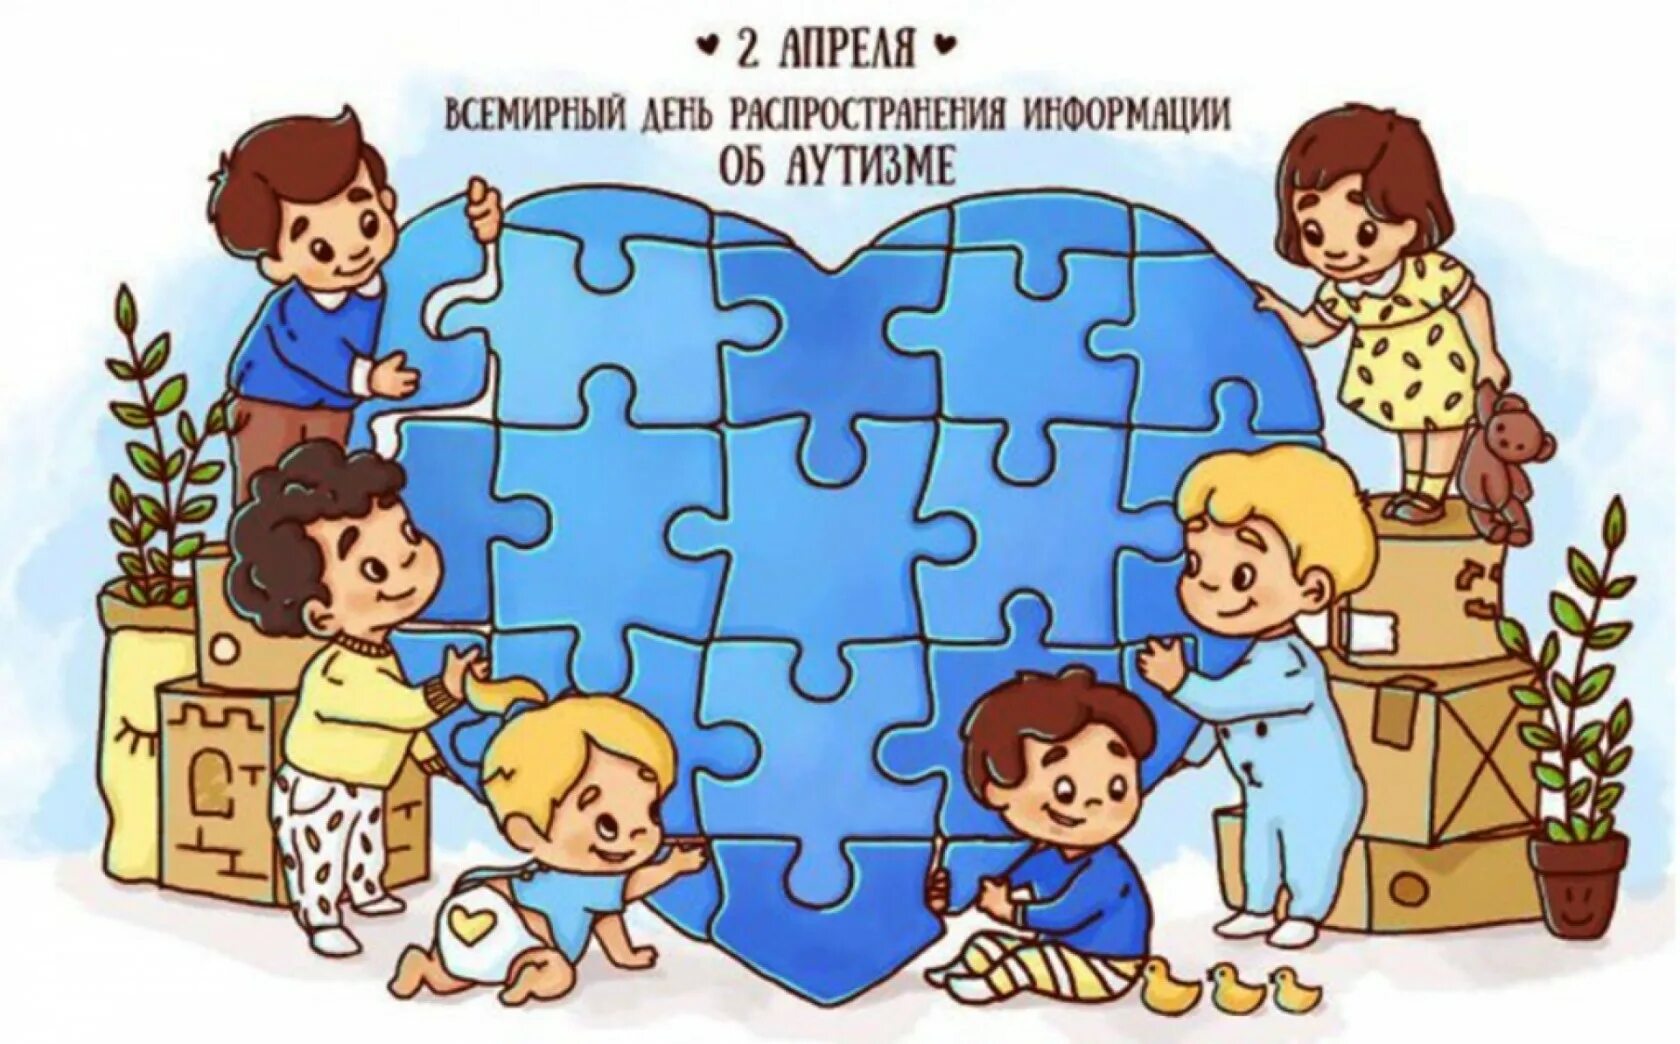 Распространение информации об аутизме. Всемирный день аутизма. Всемирный день распространения информации о проблеме аутизма. Аутизм рисунки.